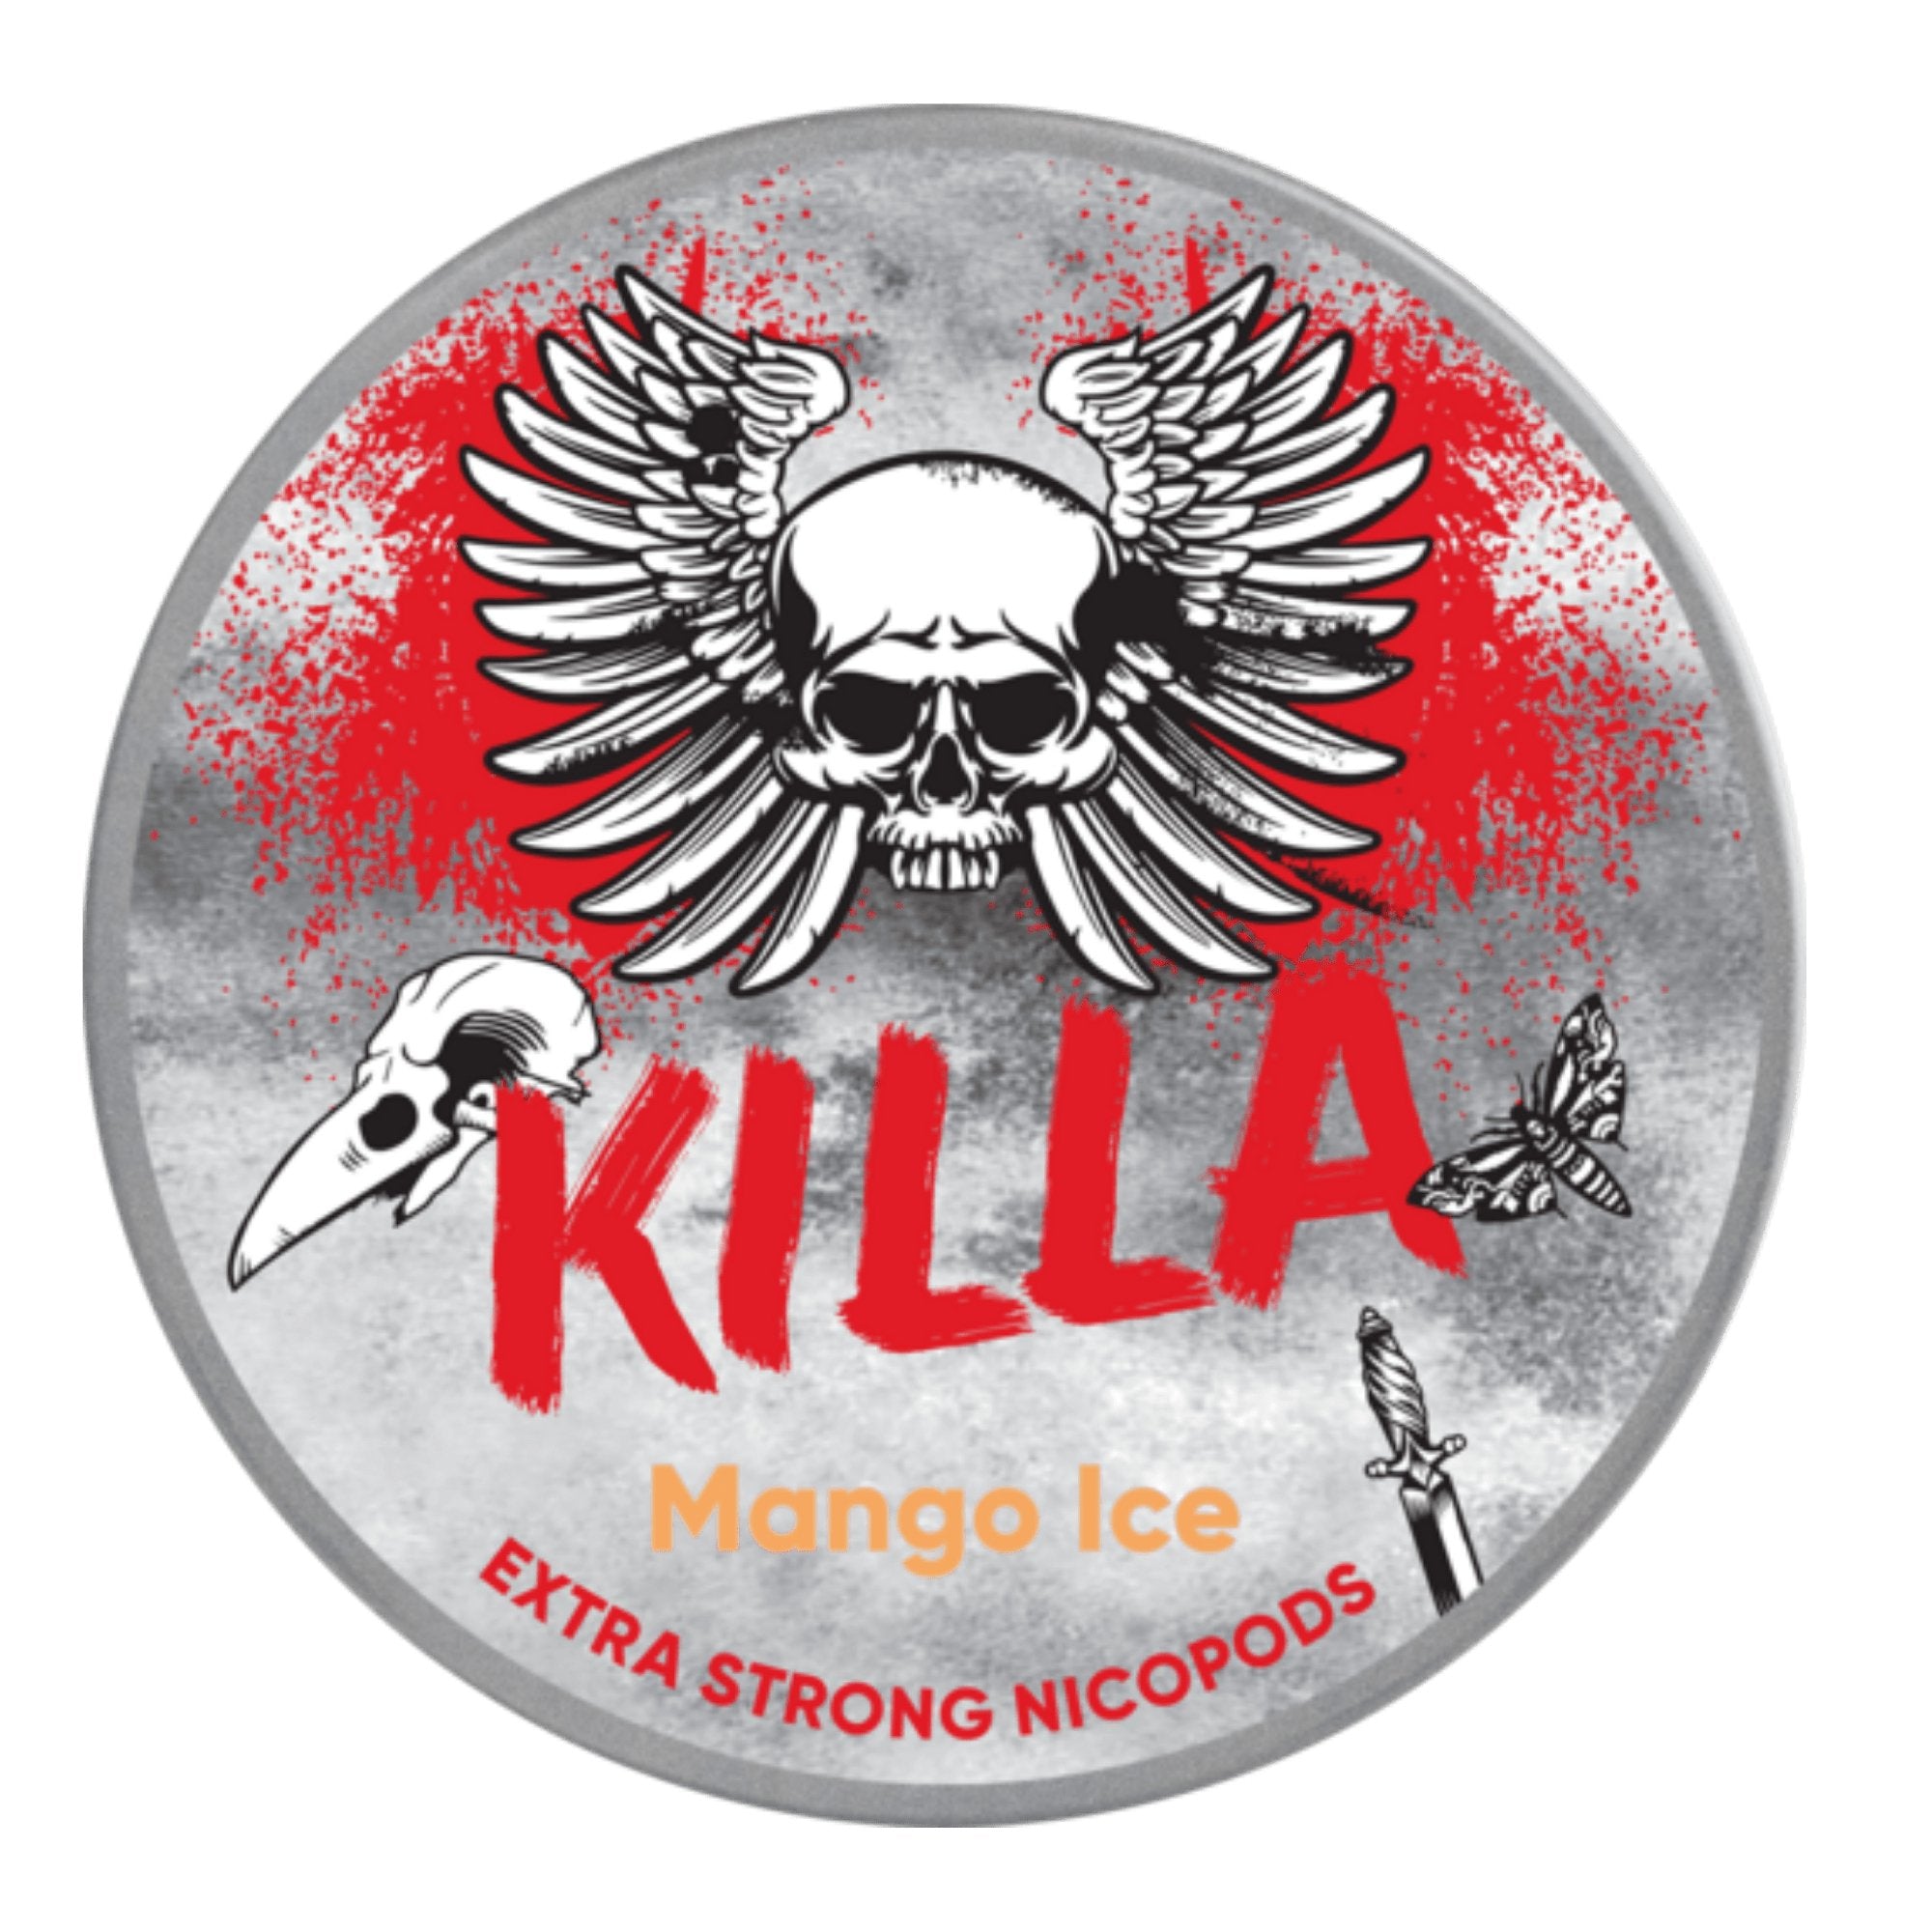 KILLA Mango Ice - EUK